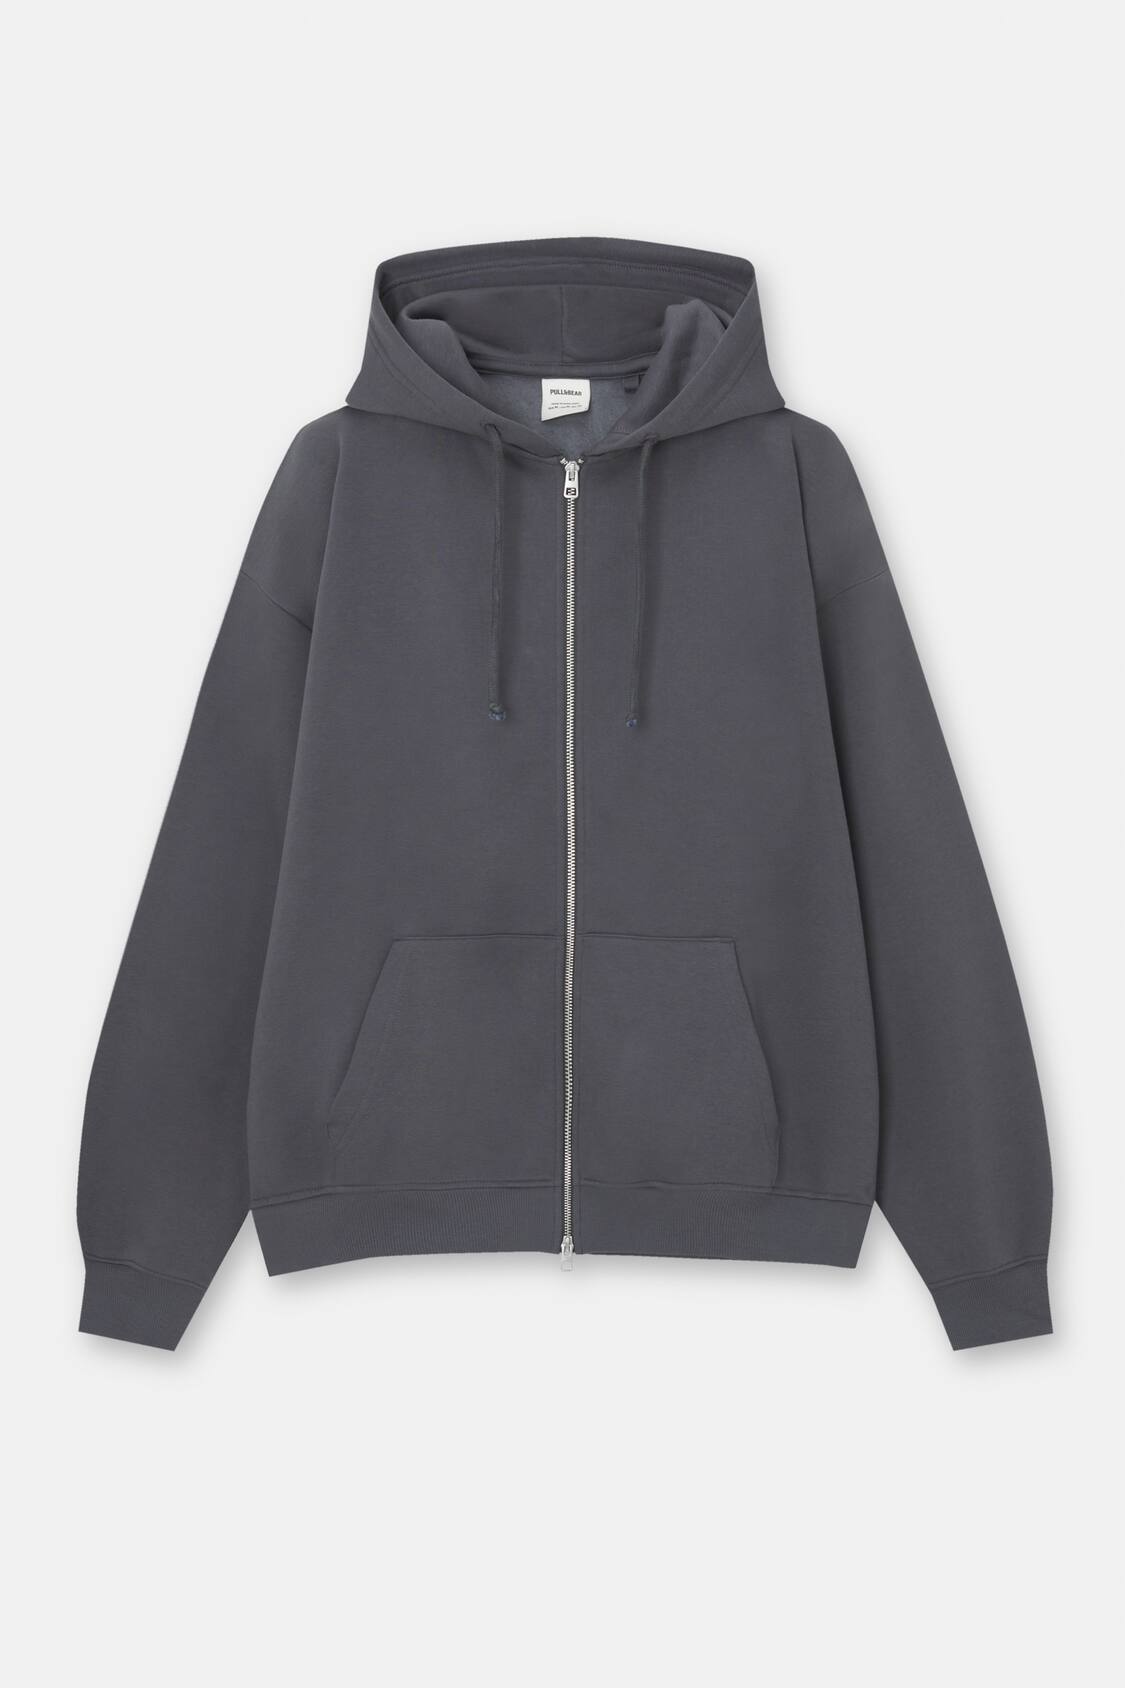 Oversize zip-up hoodie - pull&bear